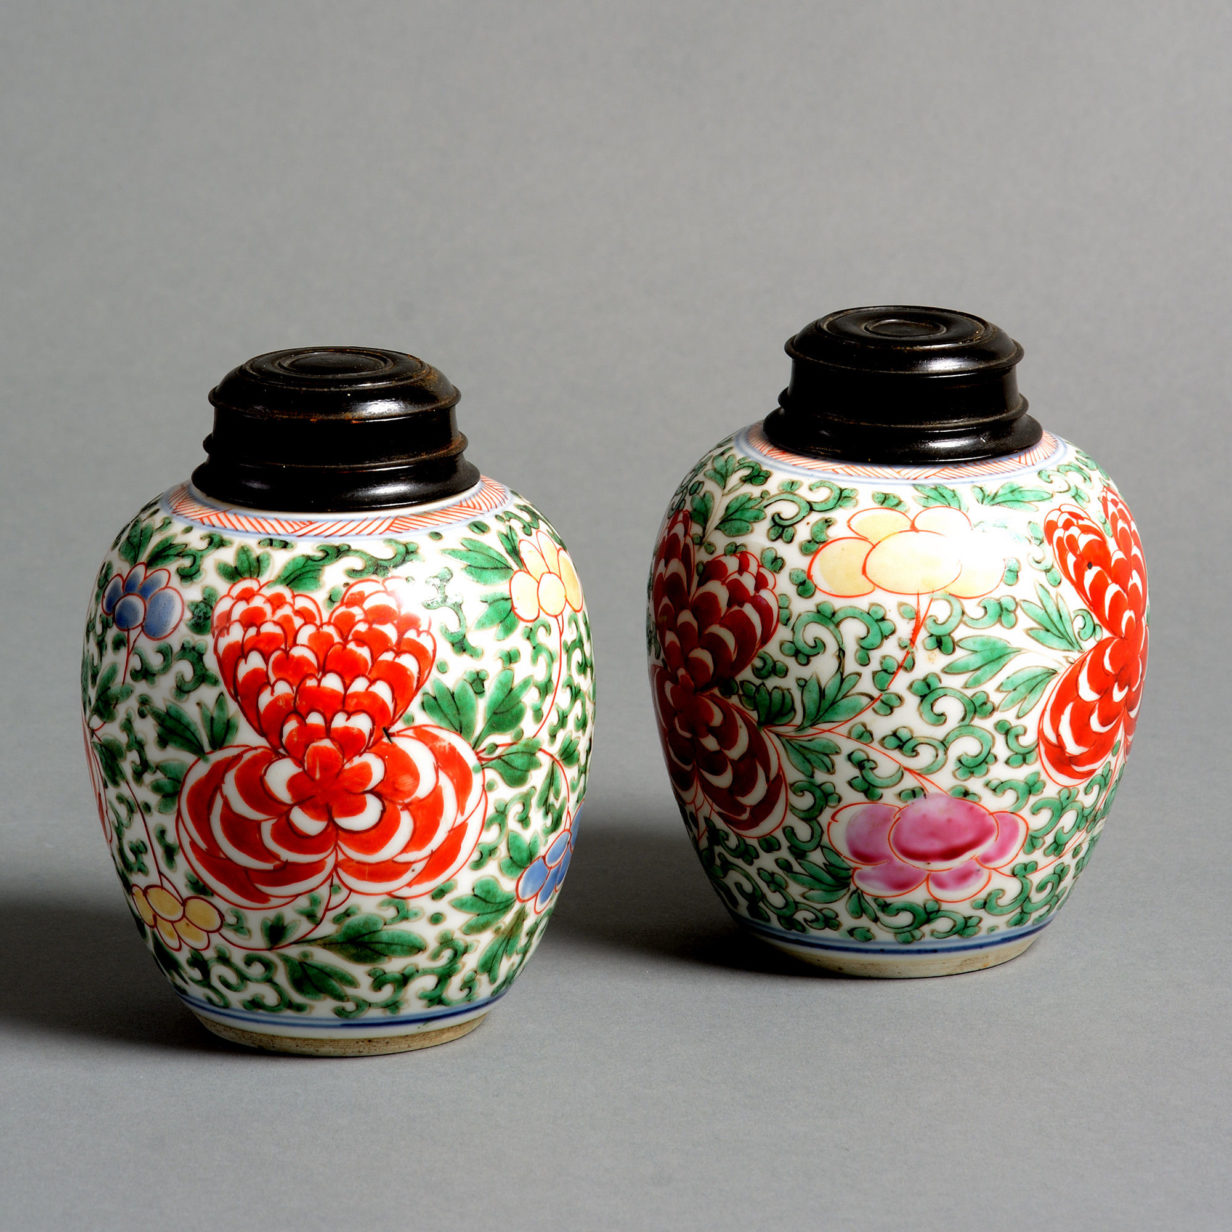 A pair of 17th century kangxi period wucai porcelain vases